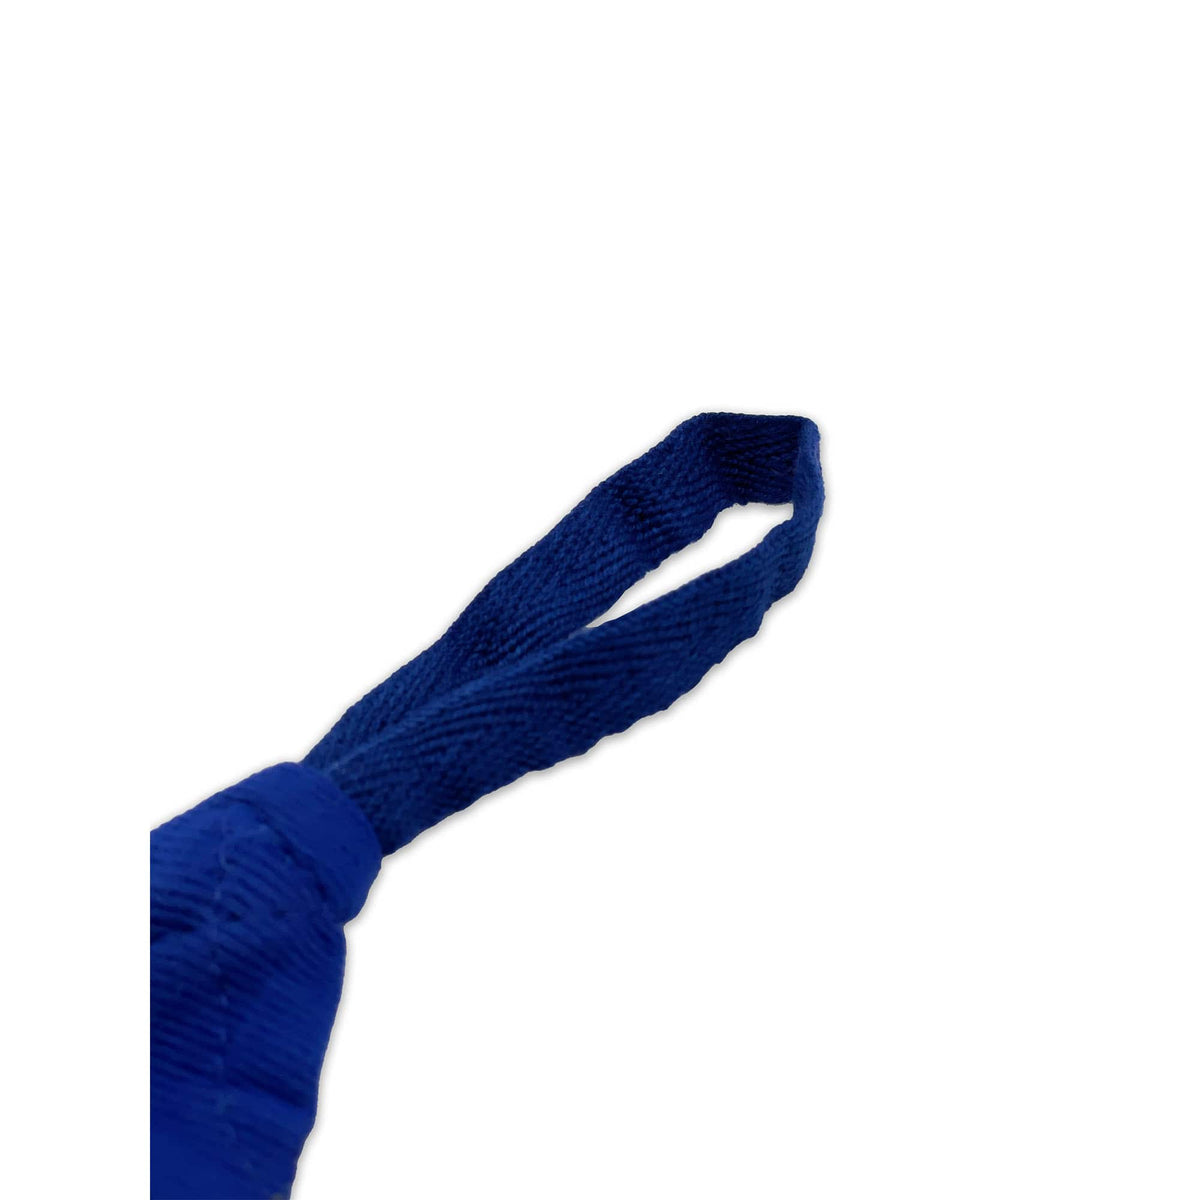 Nahaufnahme der Daumenschlaufe an der blauen Boxbandage, hervorgehoben durch ihr präzises Design für zusätzlichen Halt und einfaches Anlegen. Die Schlaufe gewährleistet eine sichere Positionierung der Bandage um Hand und Handgelenk für optimalen Schutz beim Training.